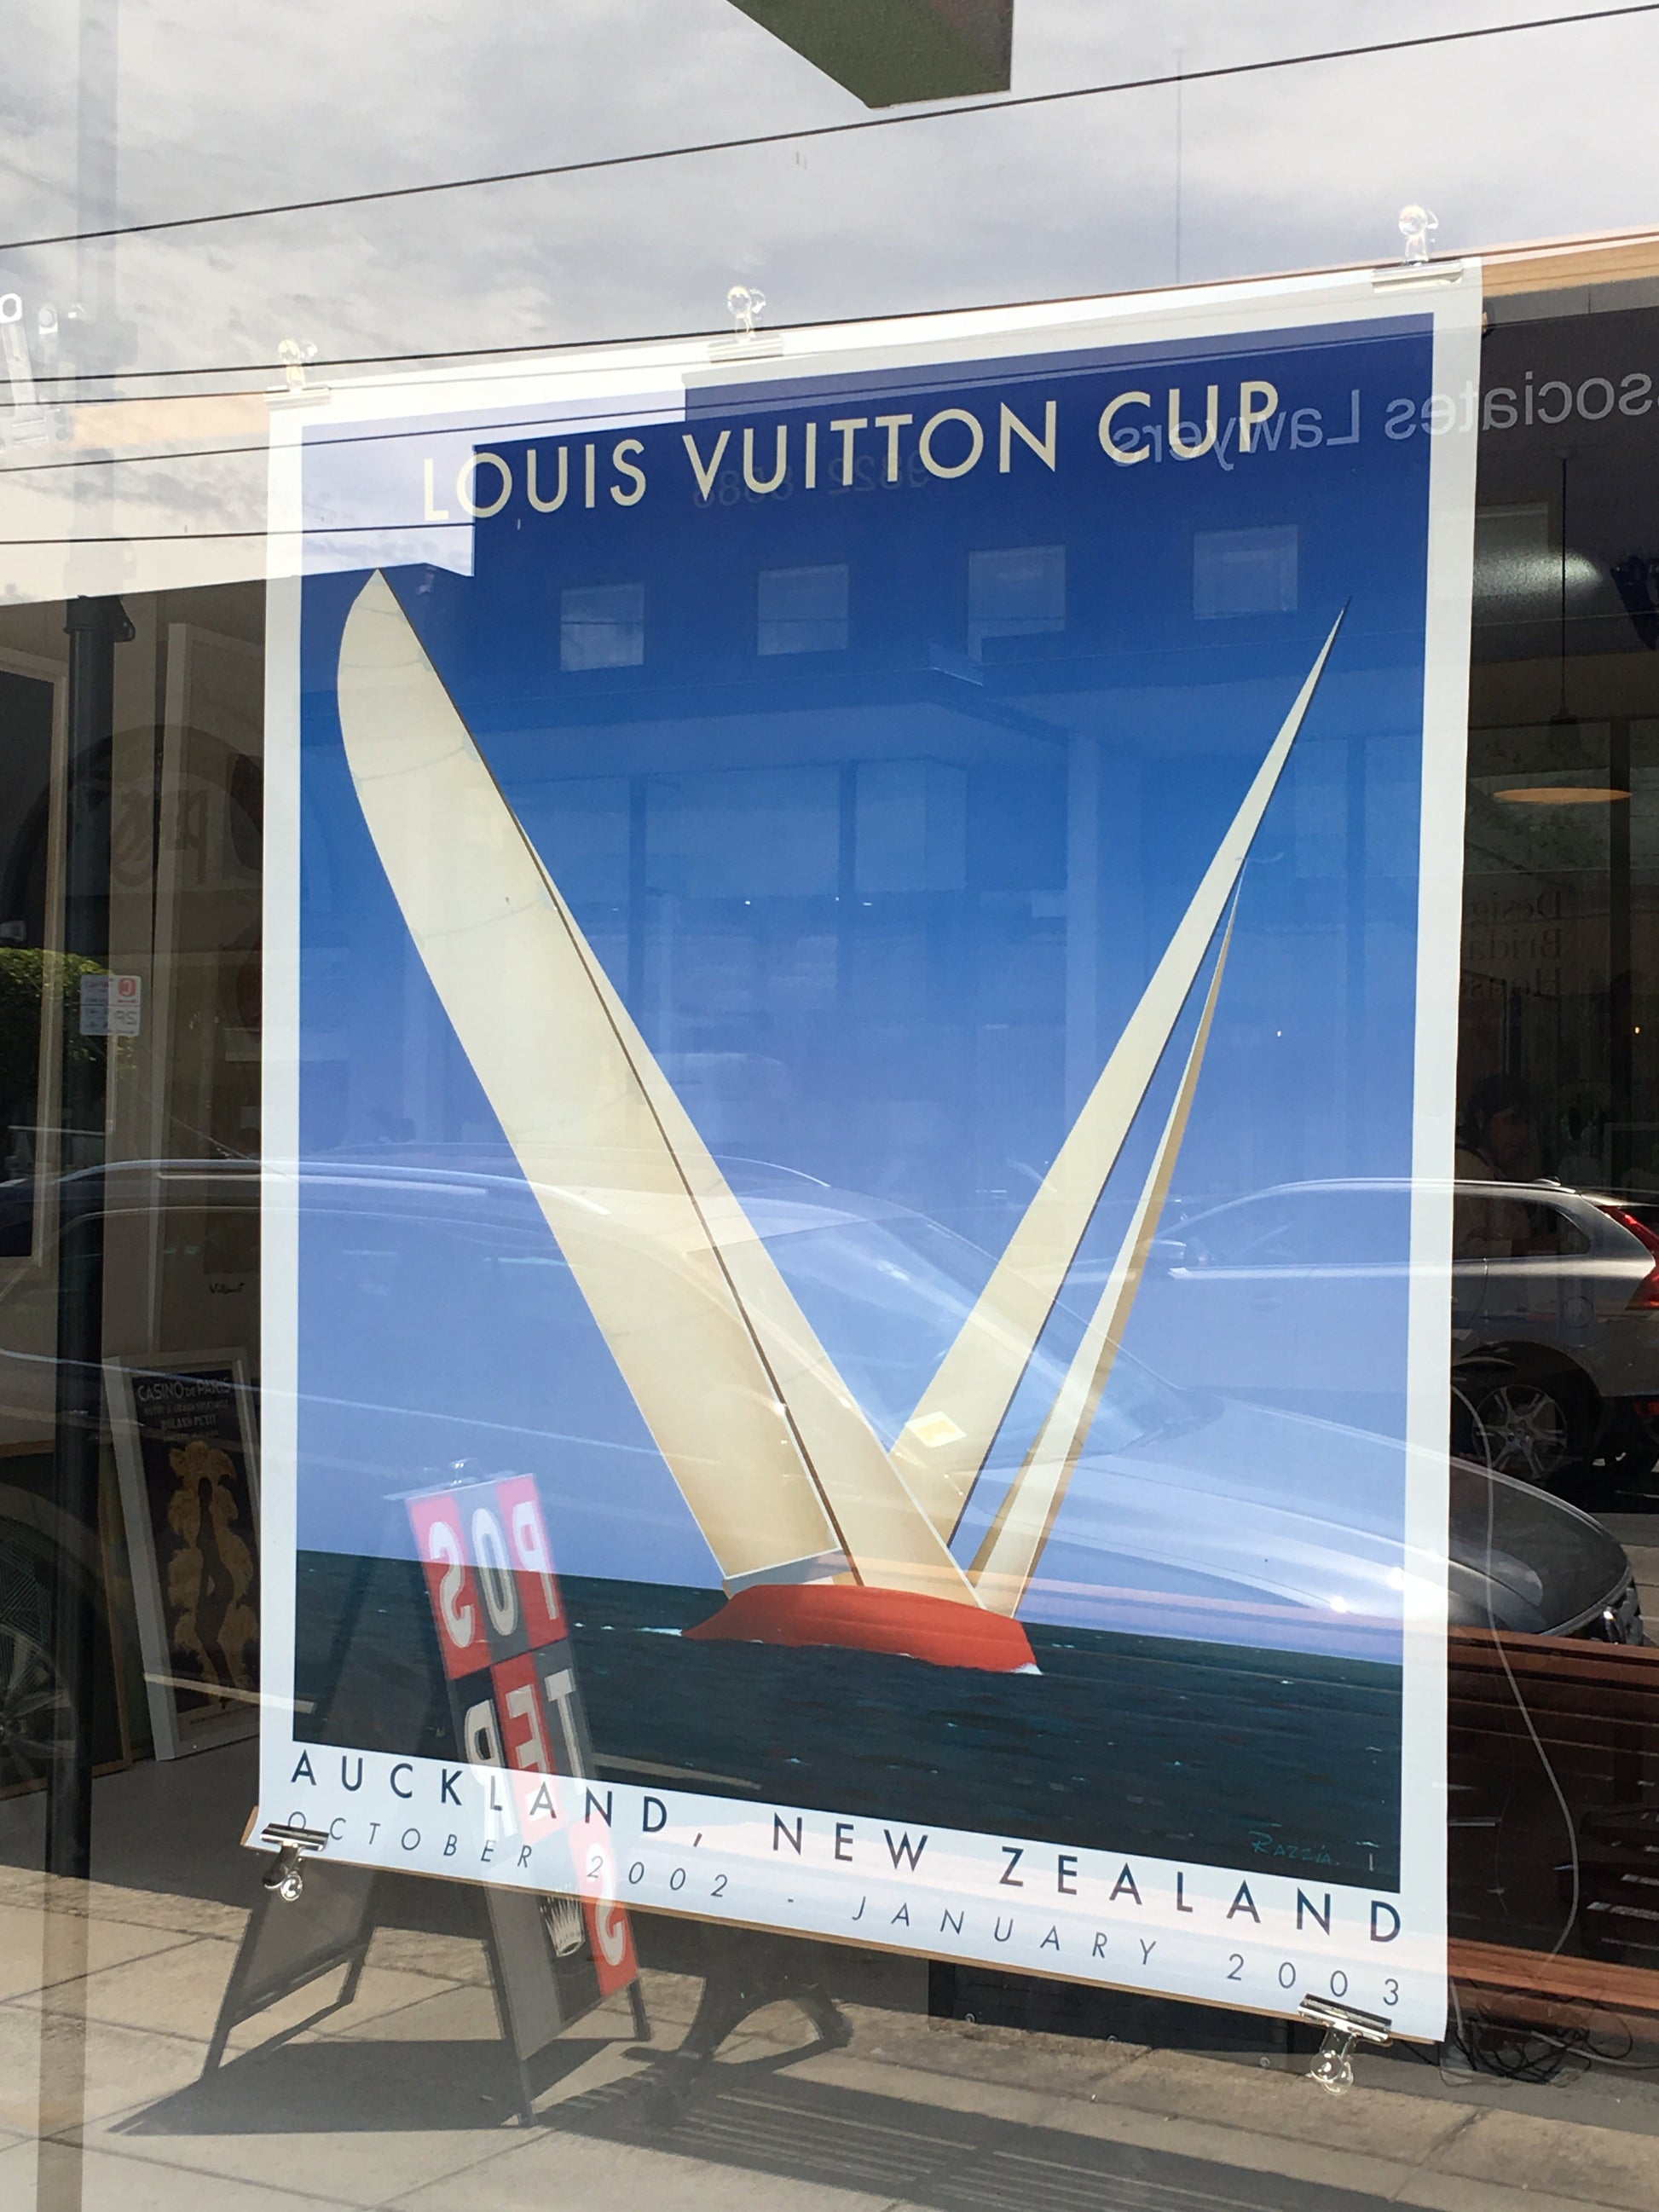 Louis Vuitton Cup 2002 Auckland Razzia Original Vintage Poster